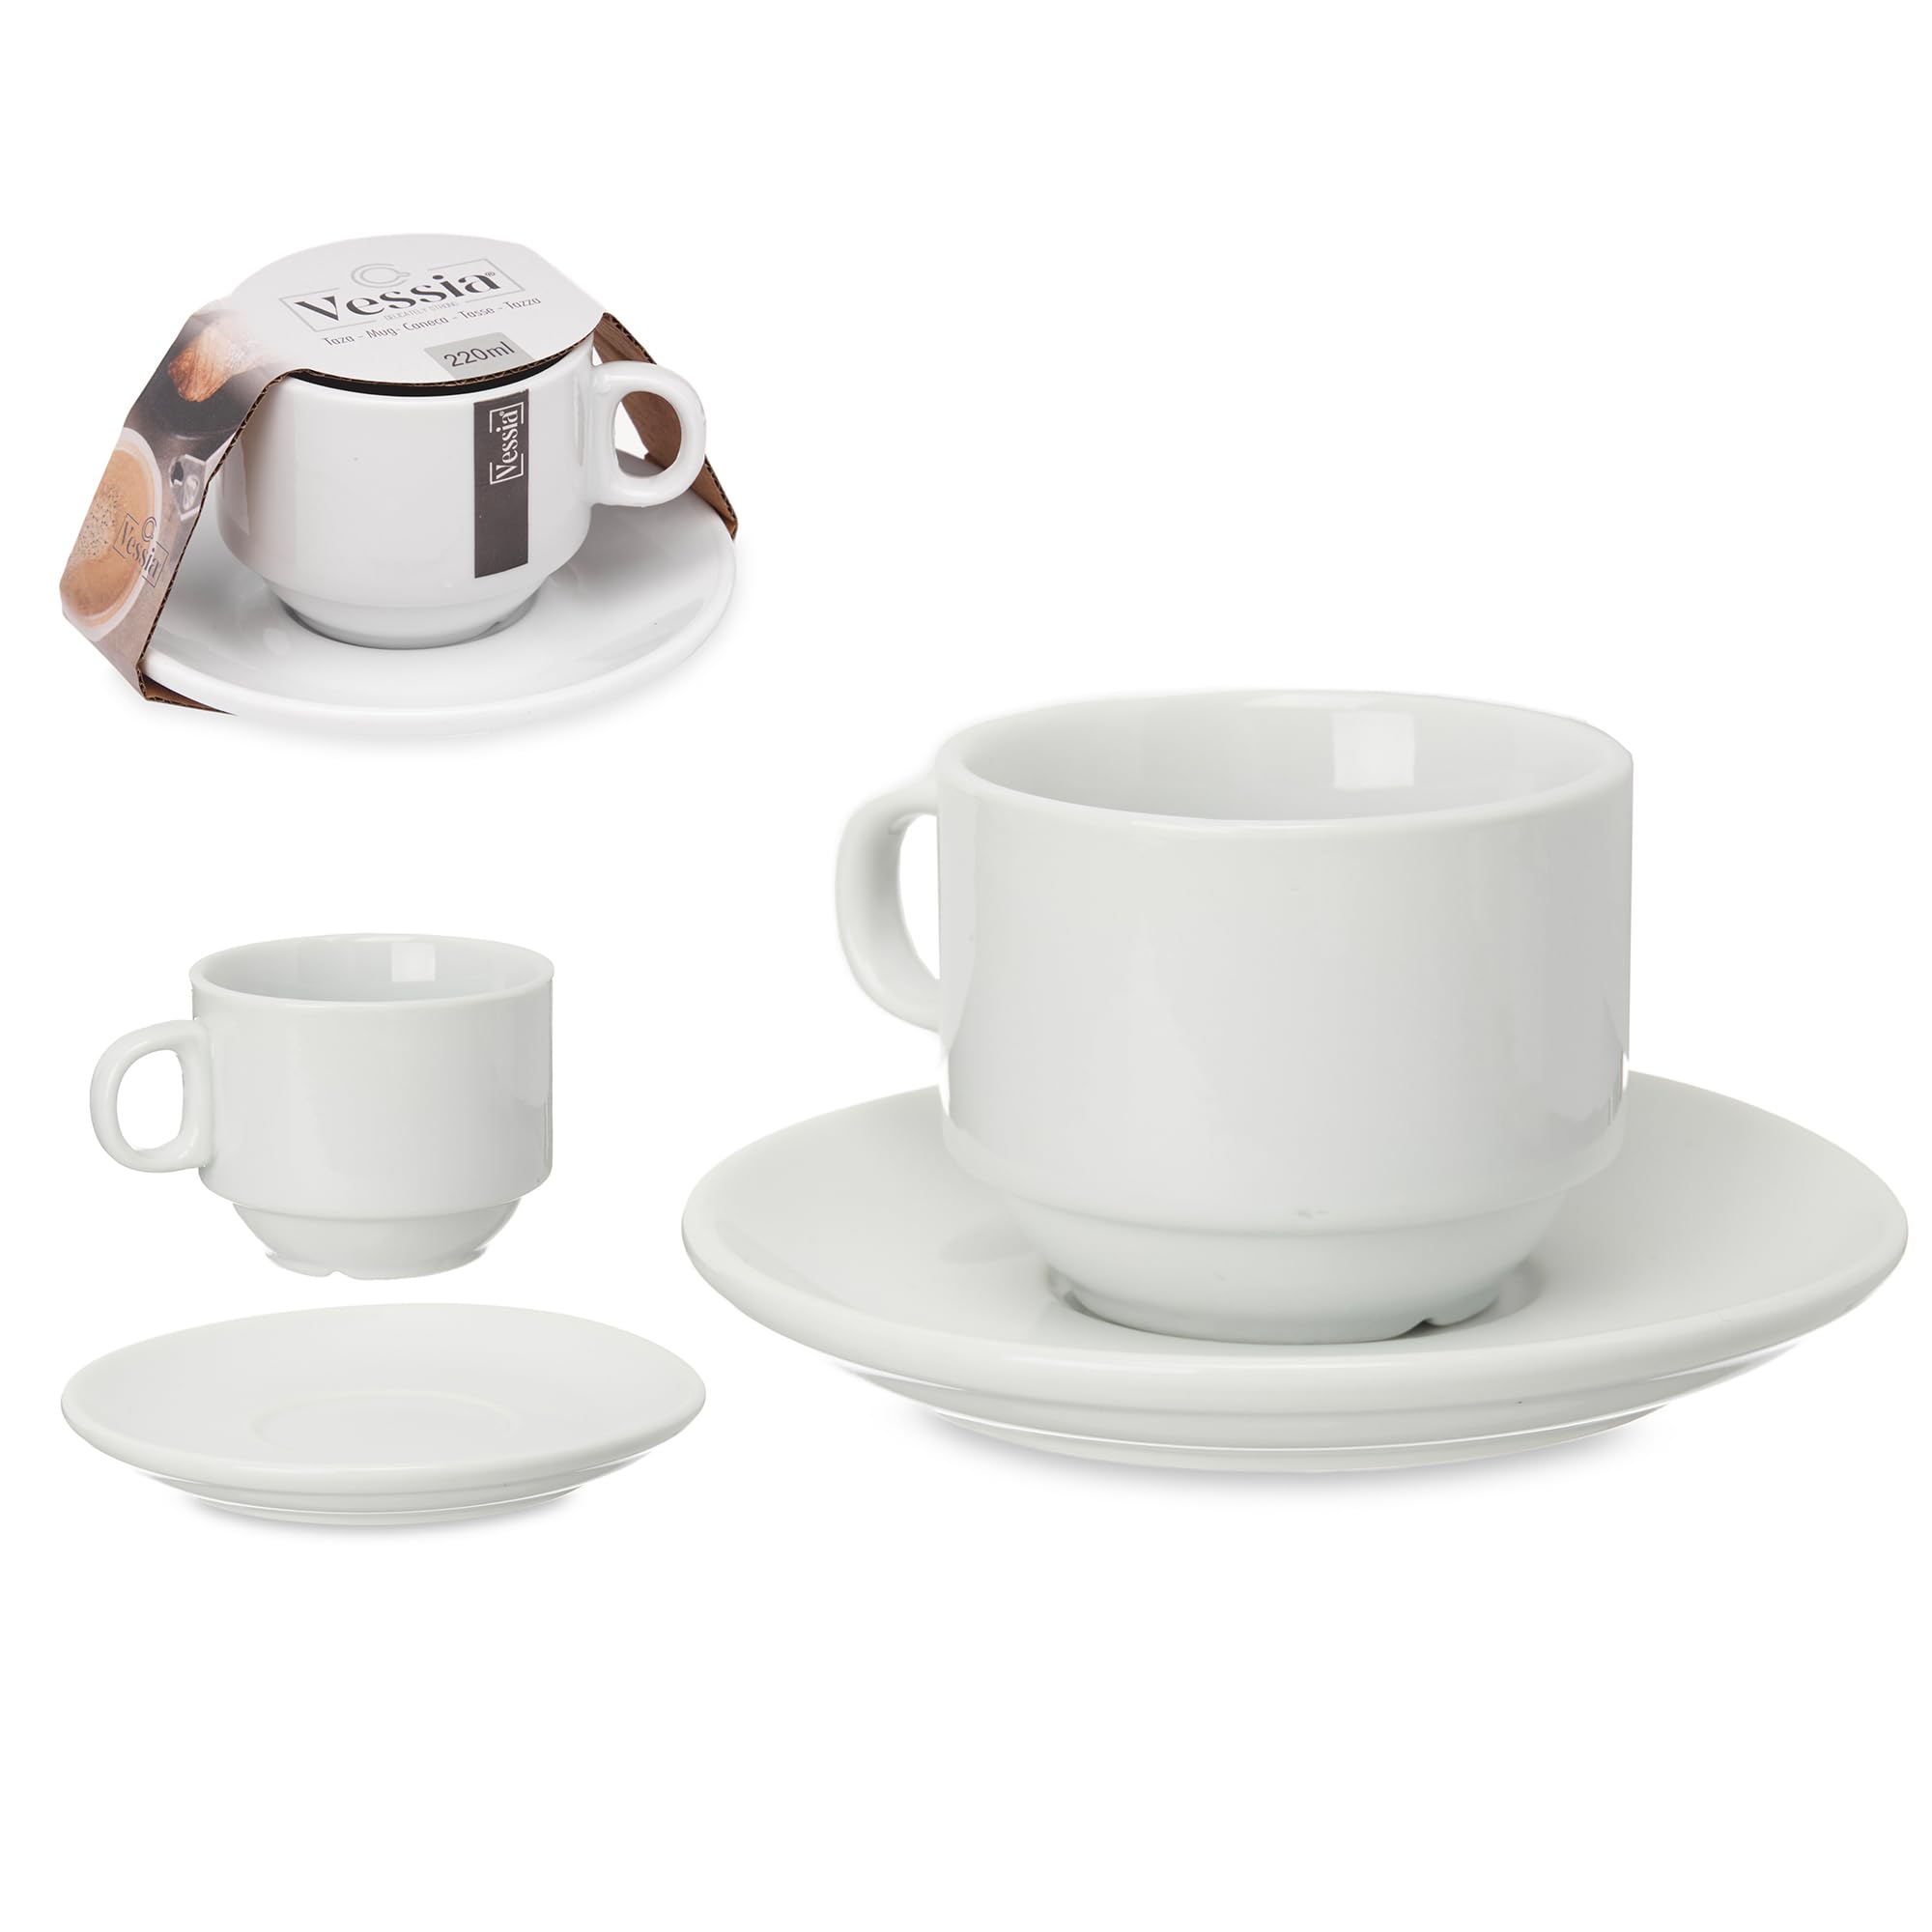 Stilvolles 12-teiliges Kaffeetassen-Set, Hochwertige Porzellan Tassen mit passenden Untertellern Kaffee Tassen Service (6 x Tassen inkl. Untertellern - 220 ml)